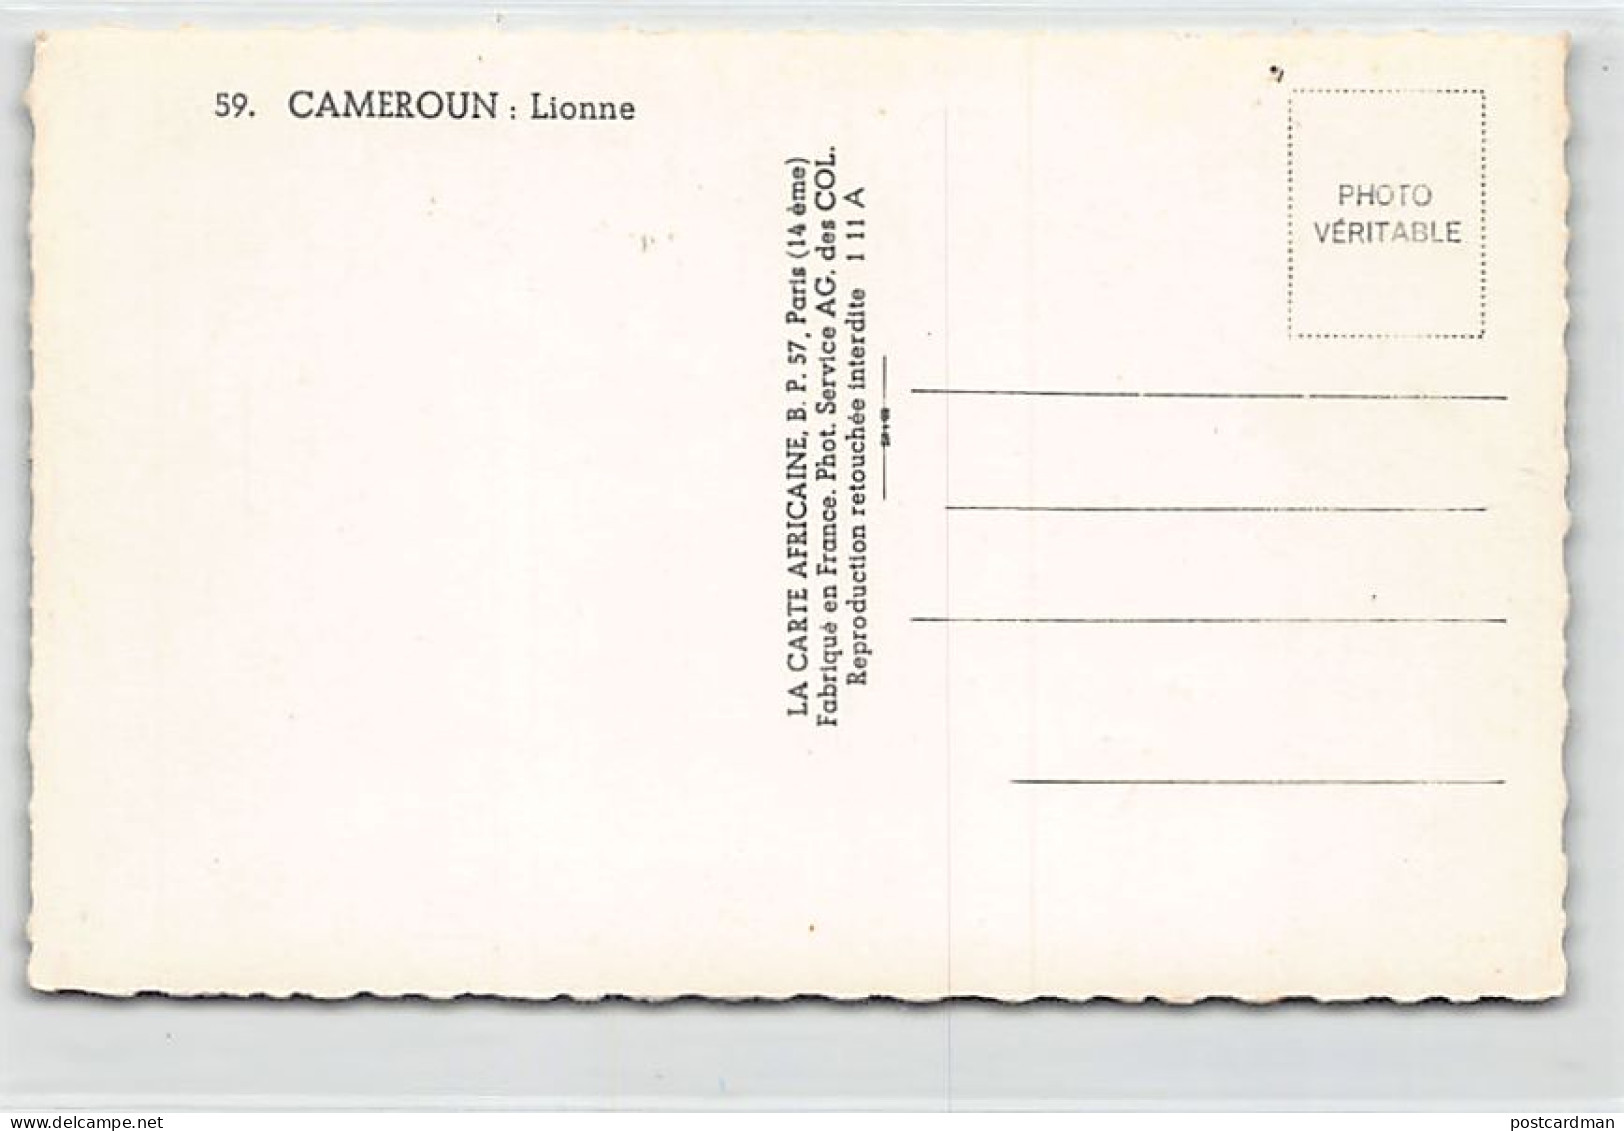 Cameroun - Lionne - Ed. La Carte Africaine 59 - Kamerun